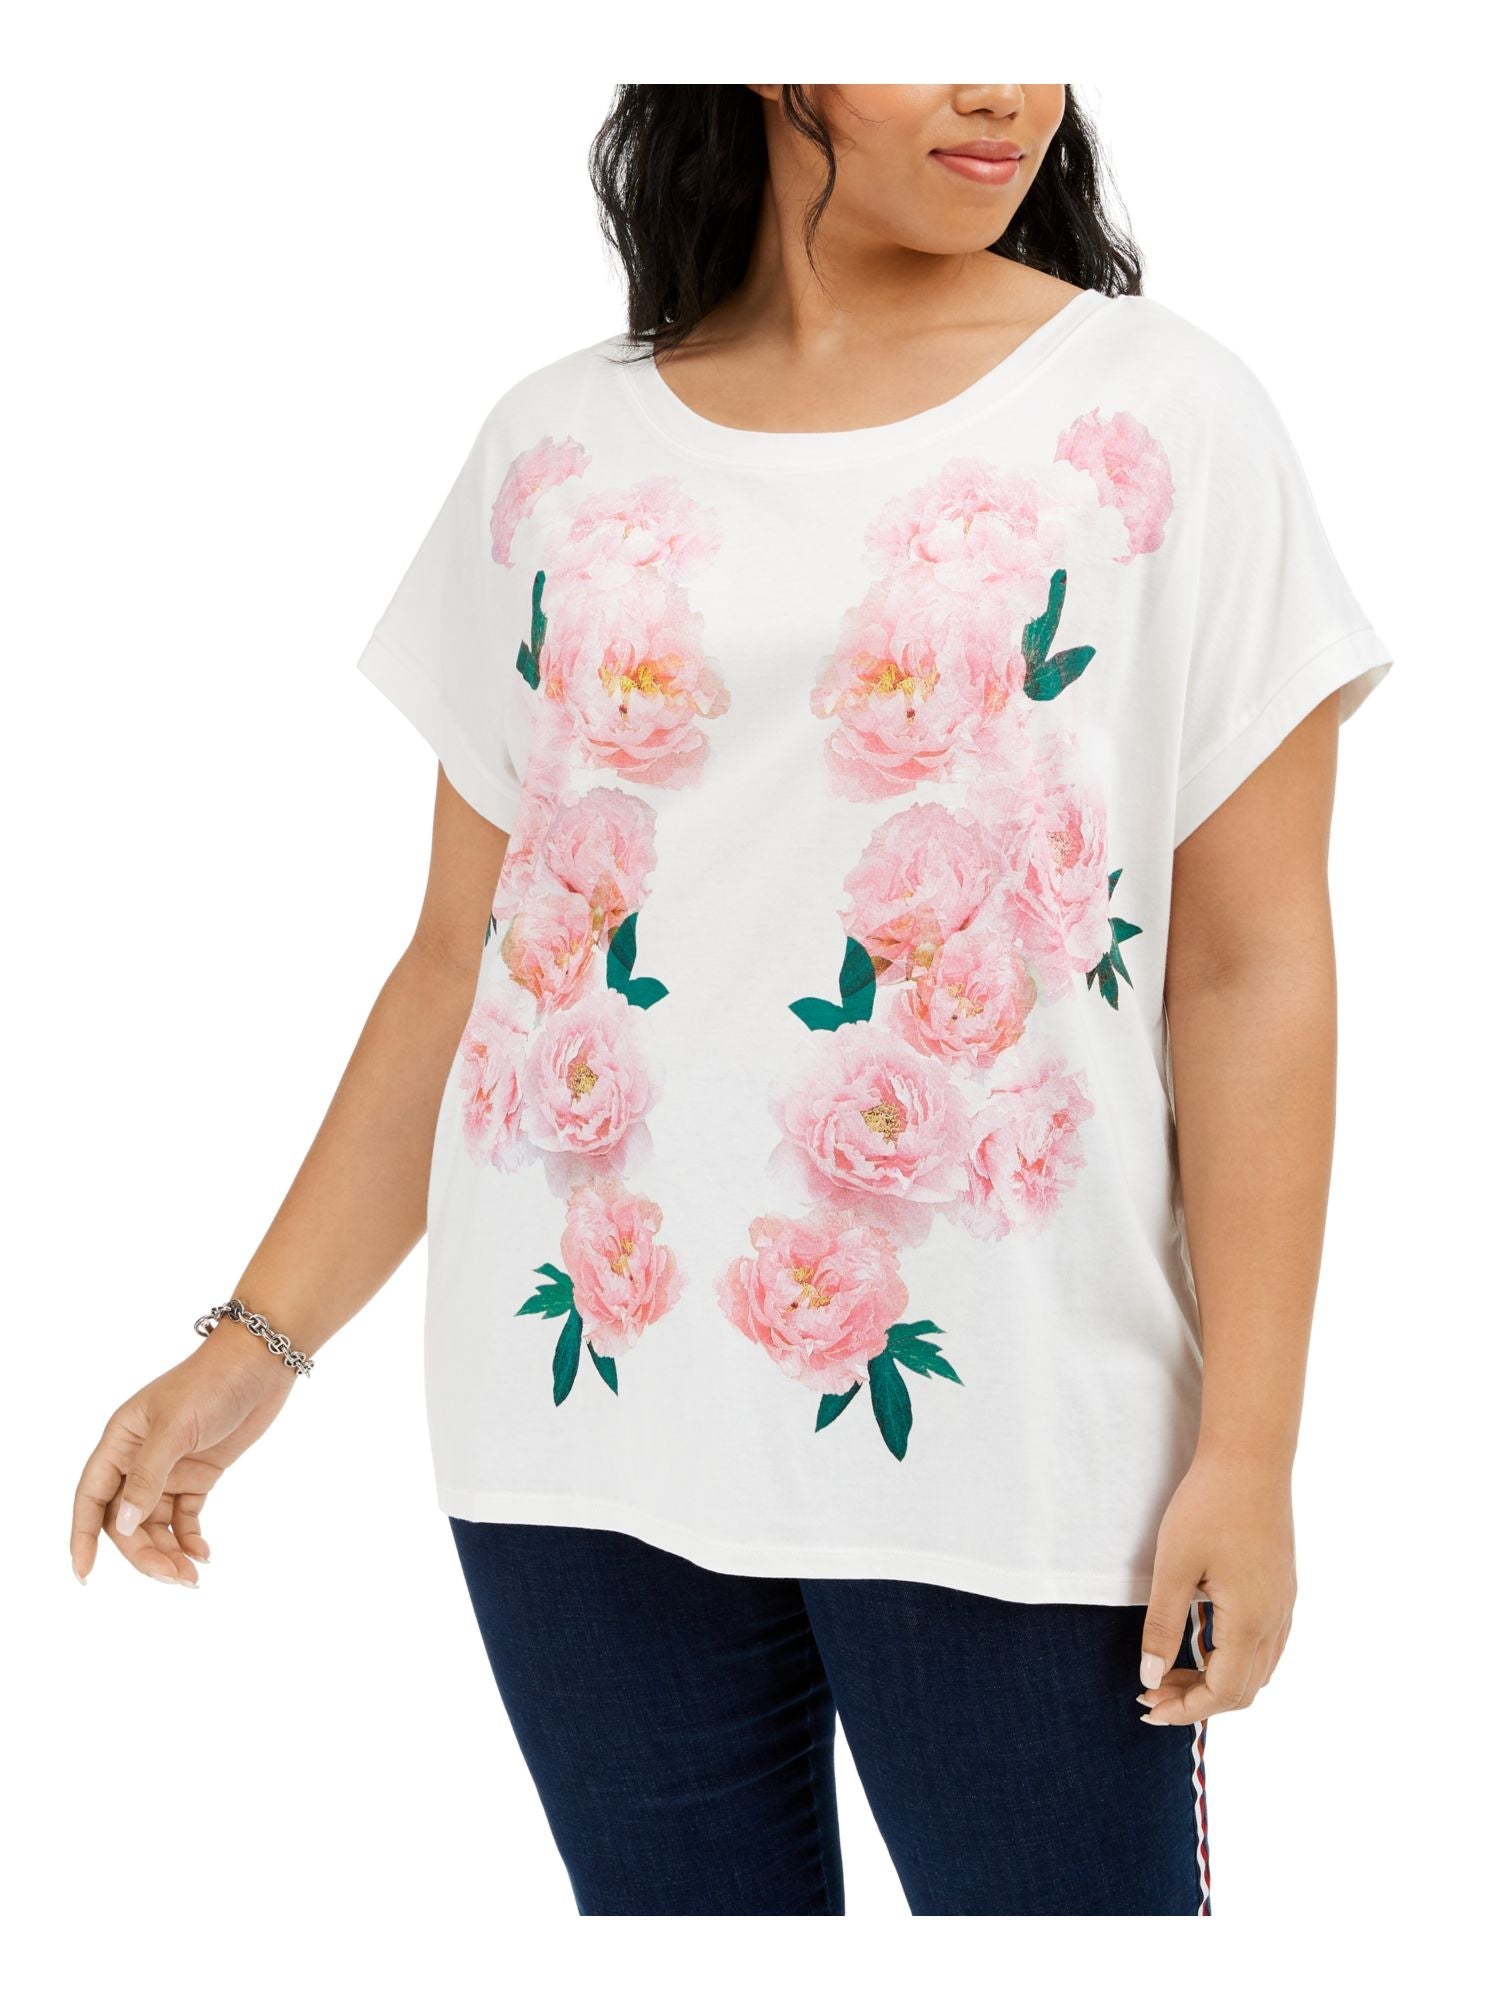 Tommy Hilfiger Men's Plus Size Floral-Print T-Shirt White Size 1X